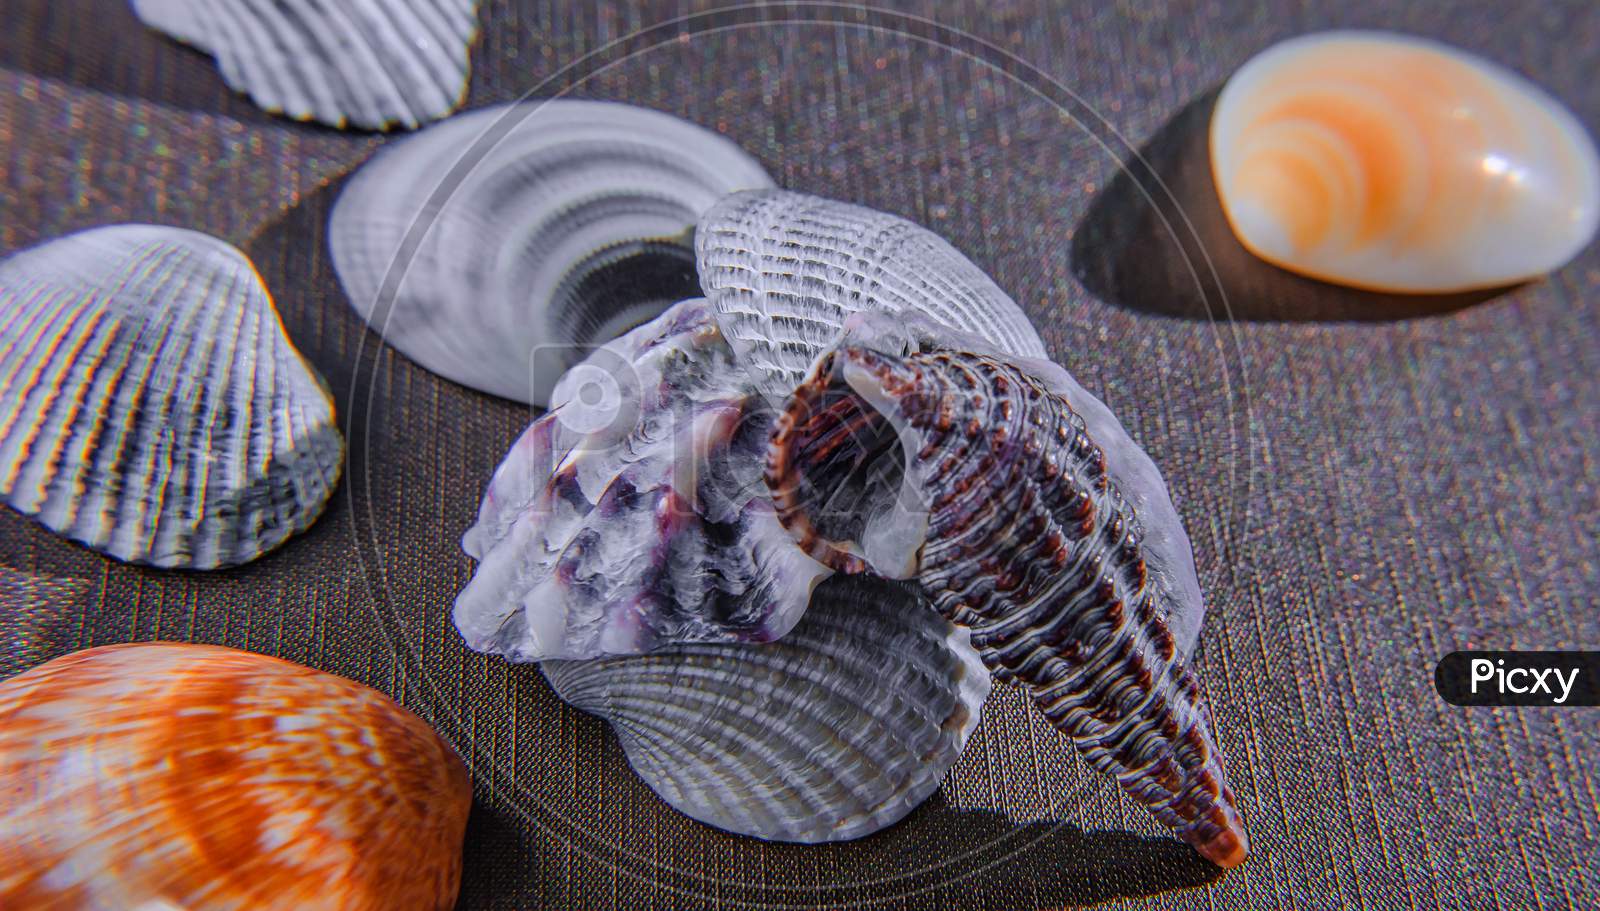 Sea Shell From Sea